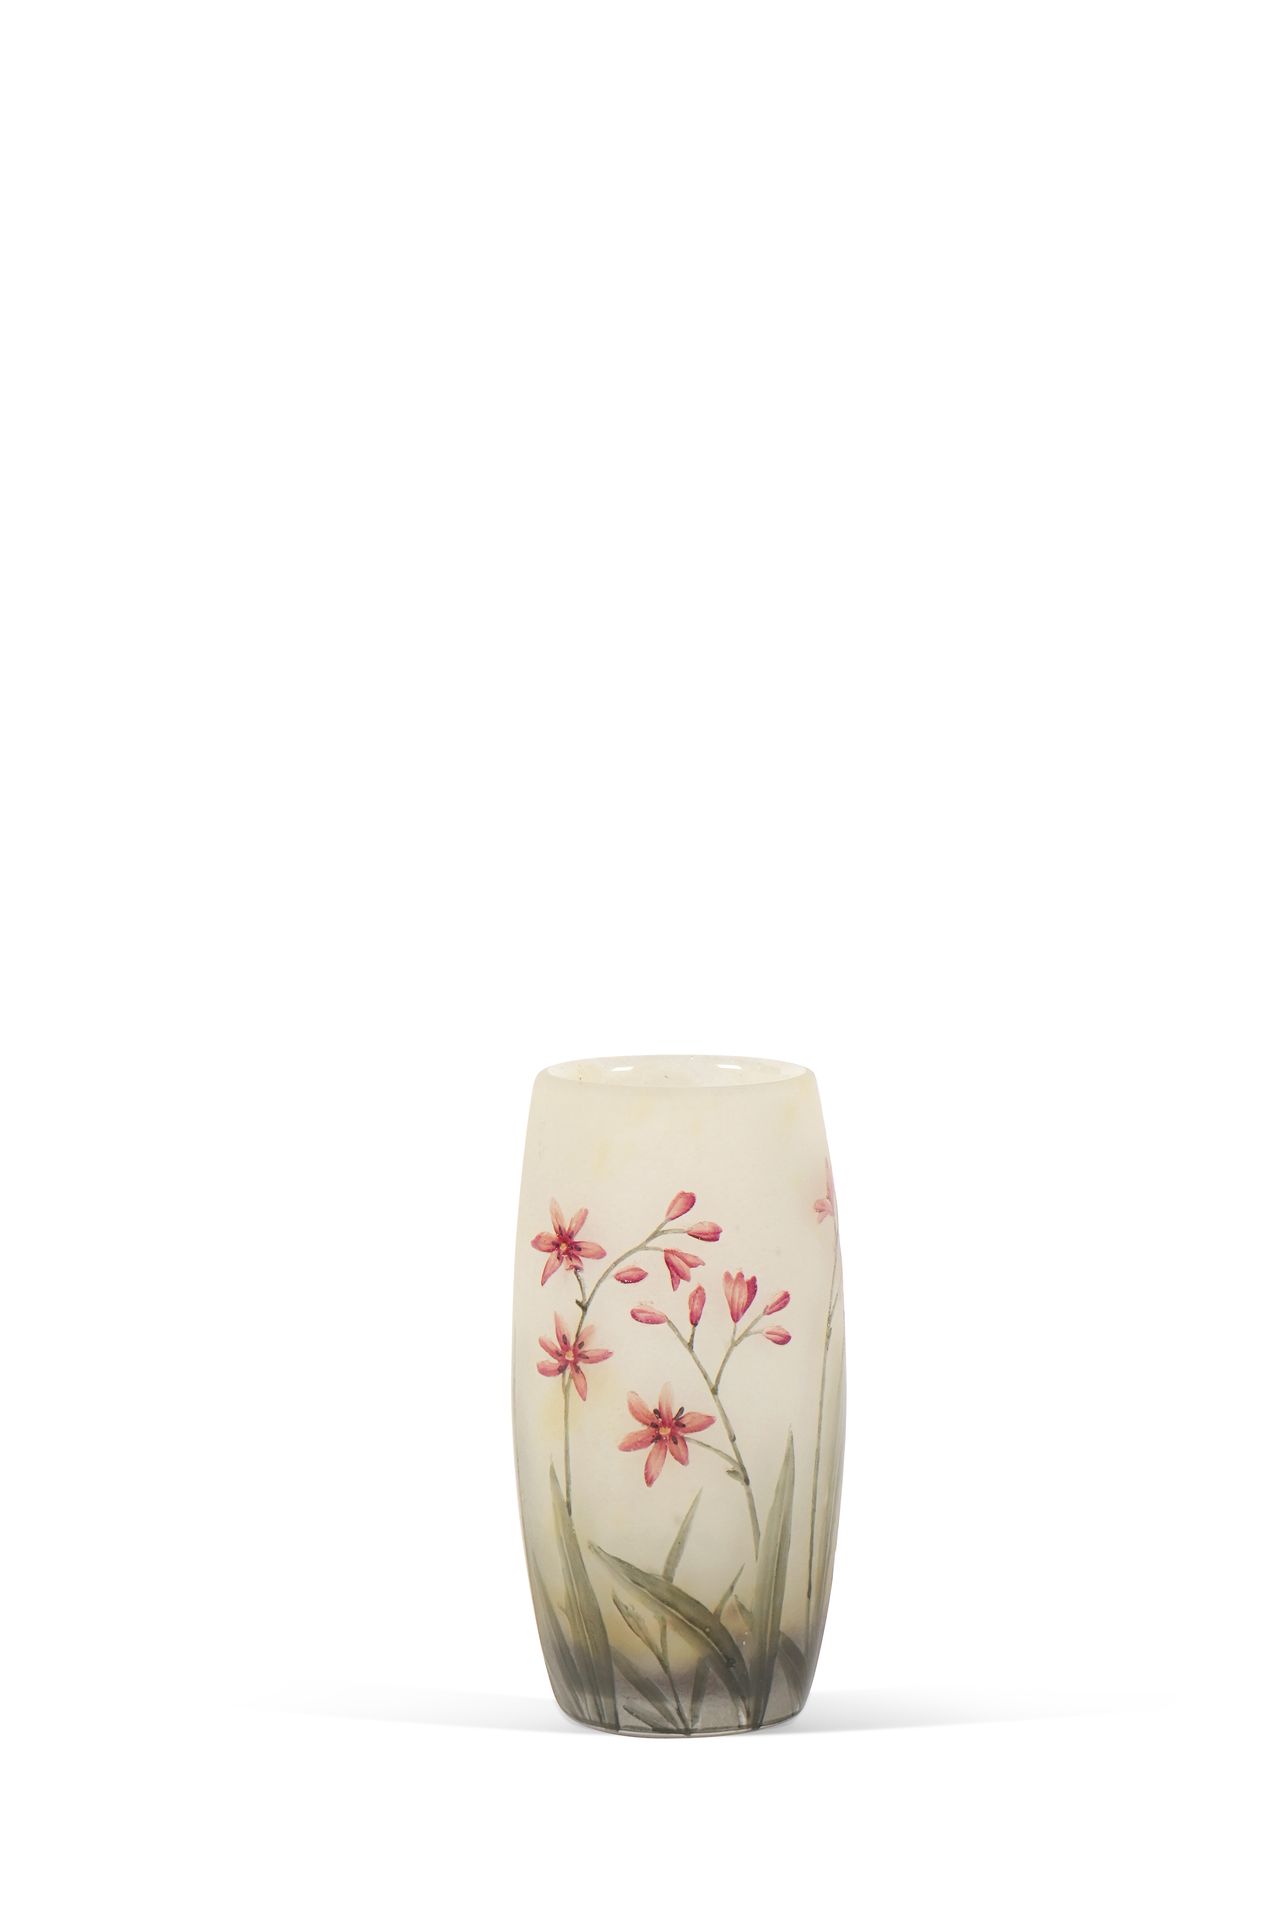 Null DAUM NANCY Vase Acid-etched glass Signed H. 12.5 cm